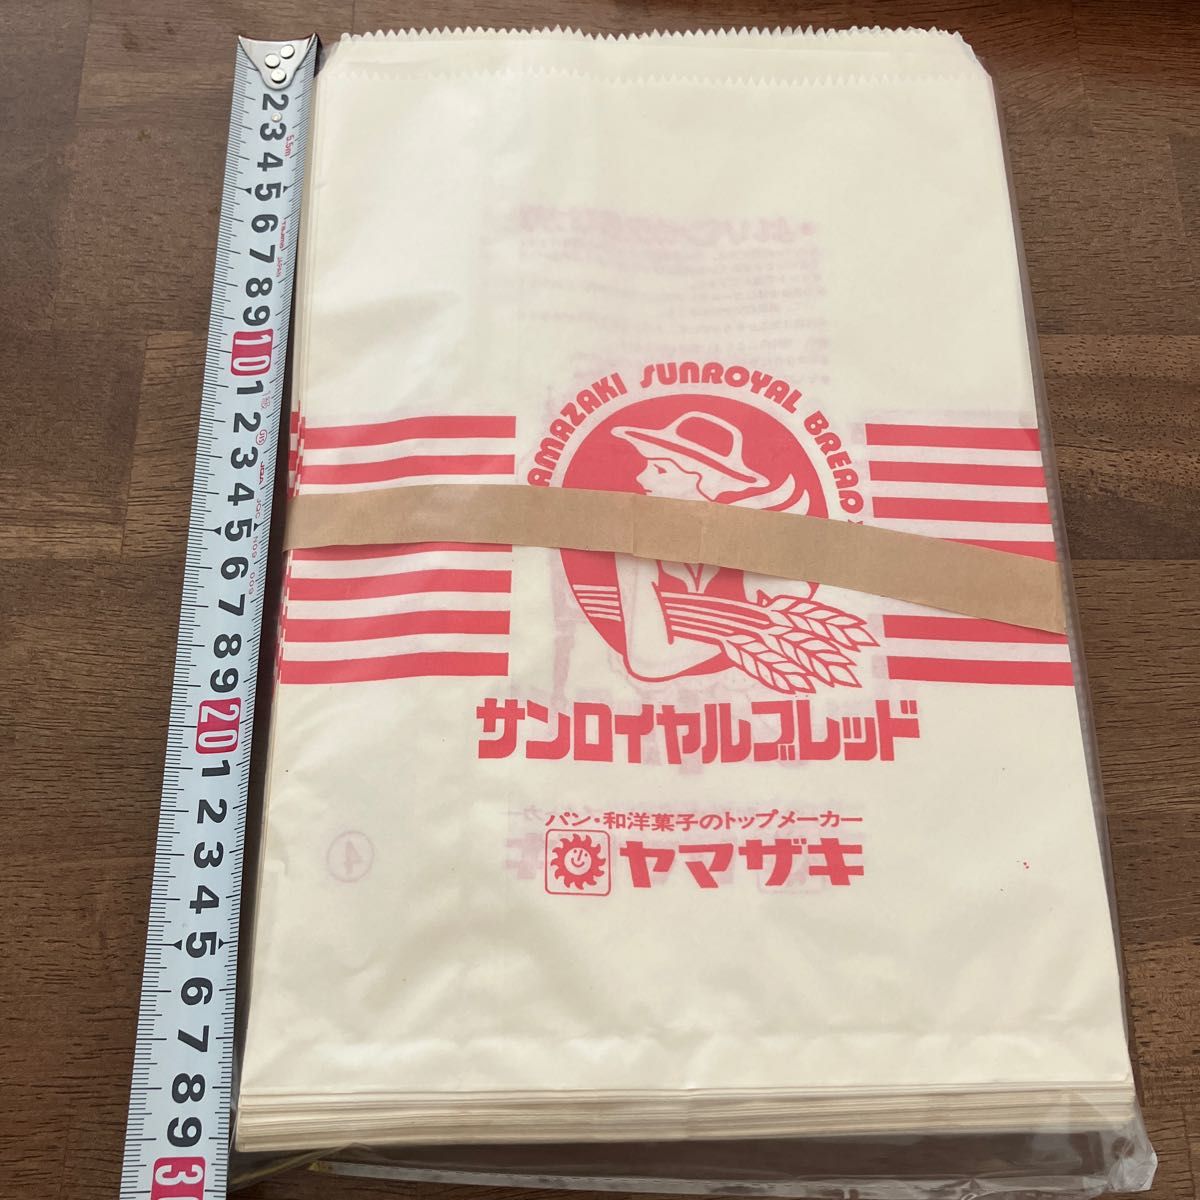 昭和レトロ ヤマザキパン サンロイヤルブレッド 平袋 1束 レトロ 紙袋